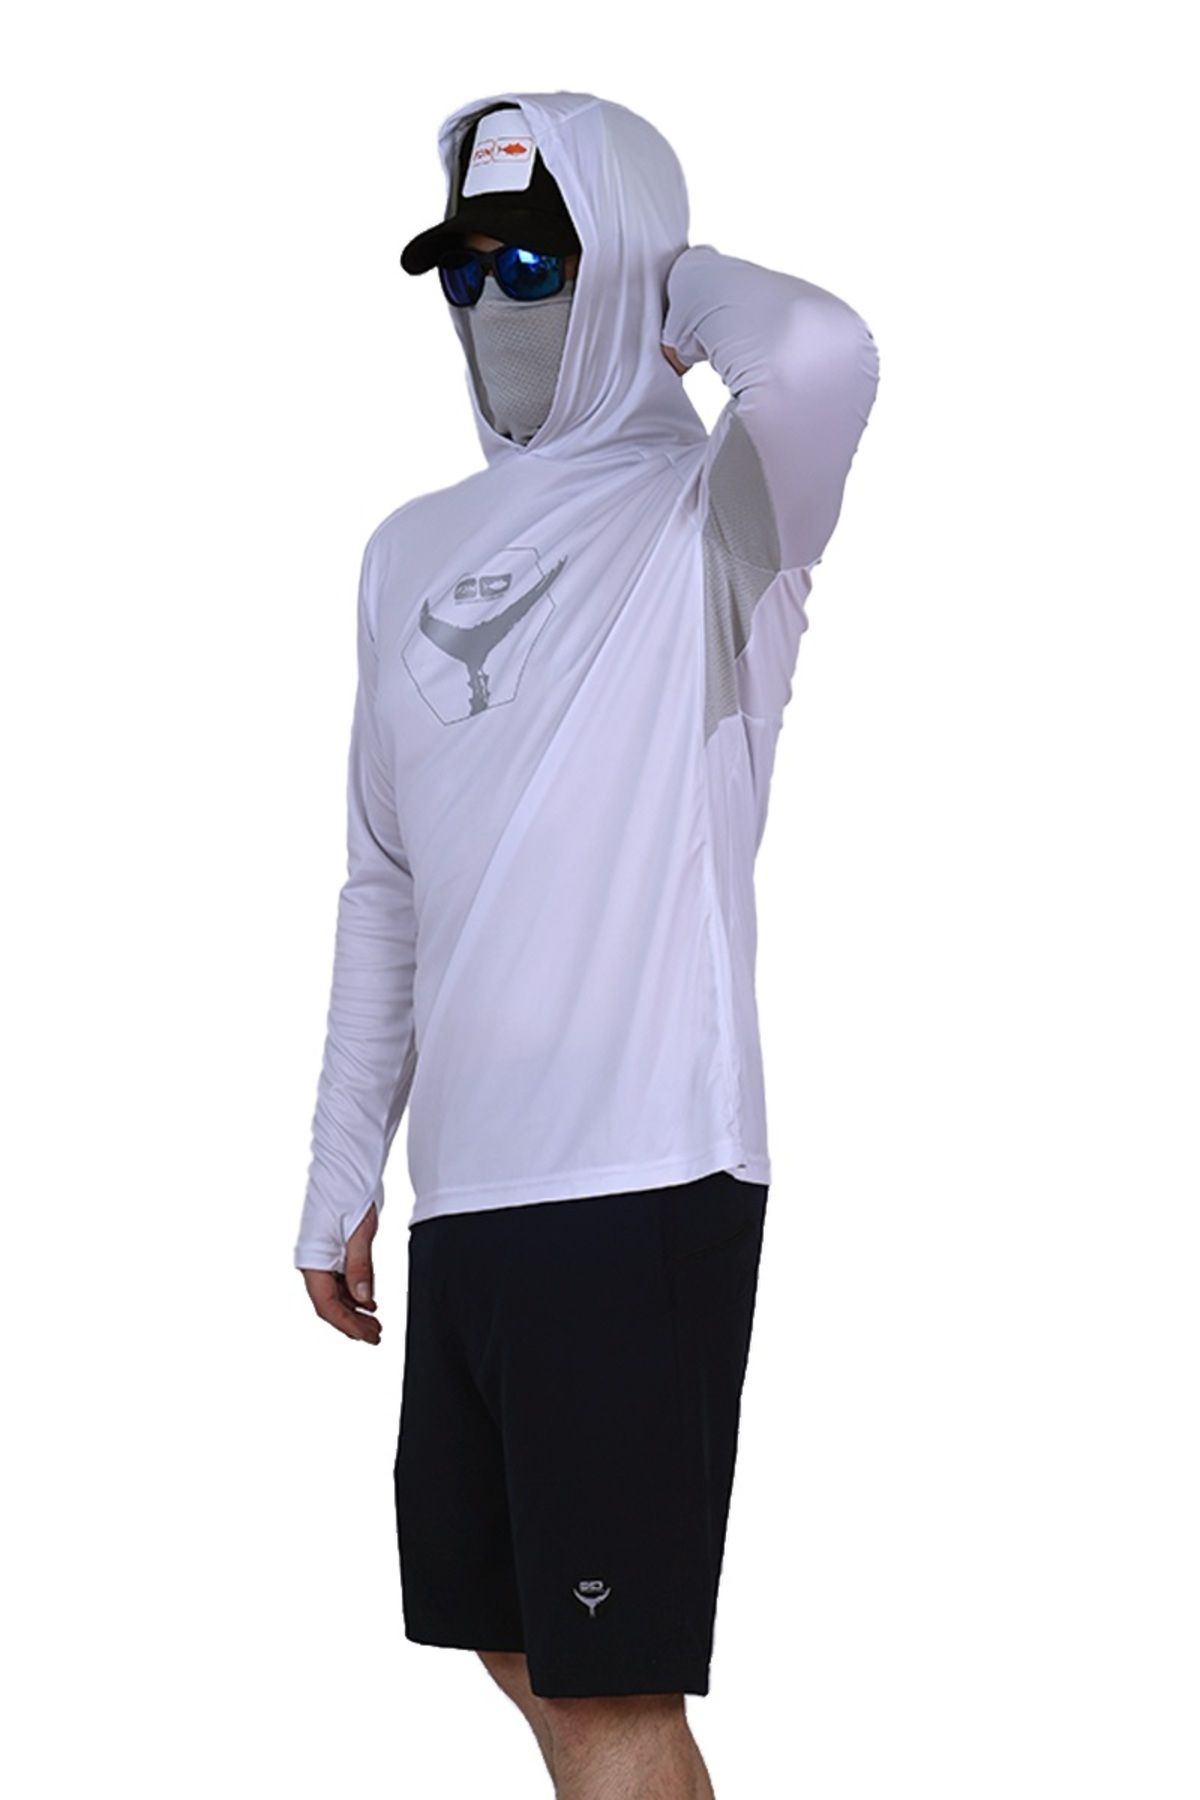 Fujin Pro Angler T-shirt Dark White Large (L)